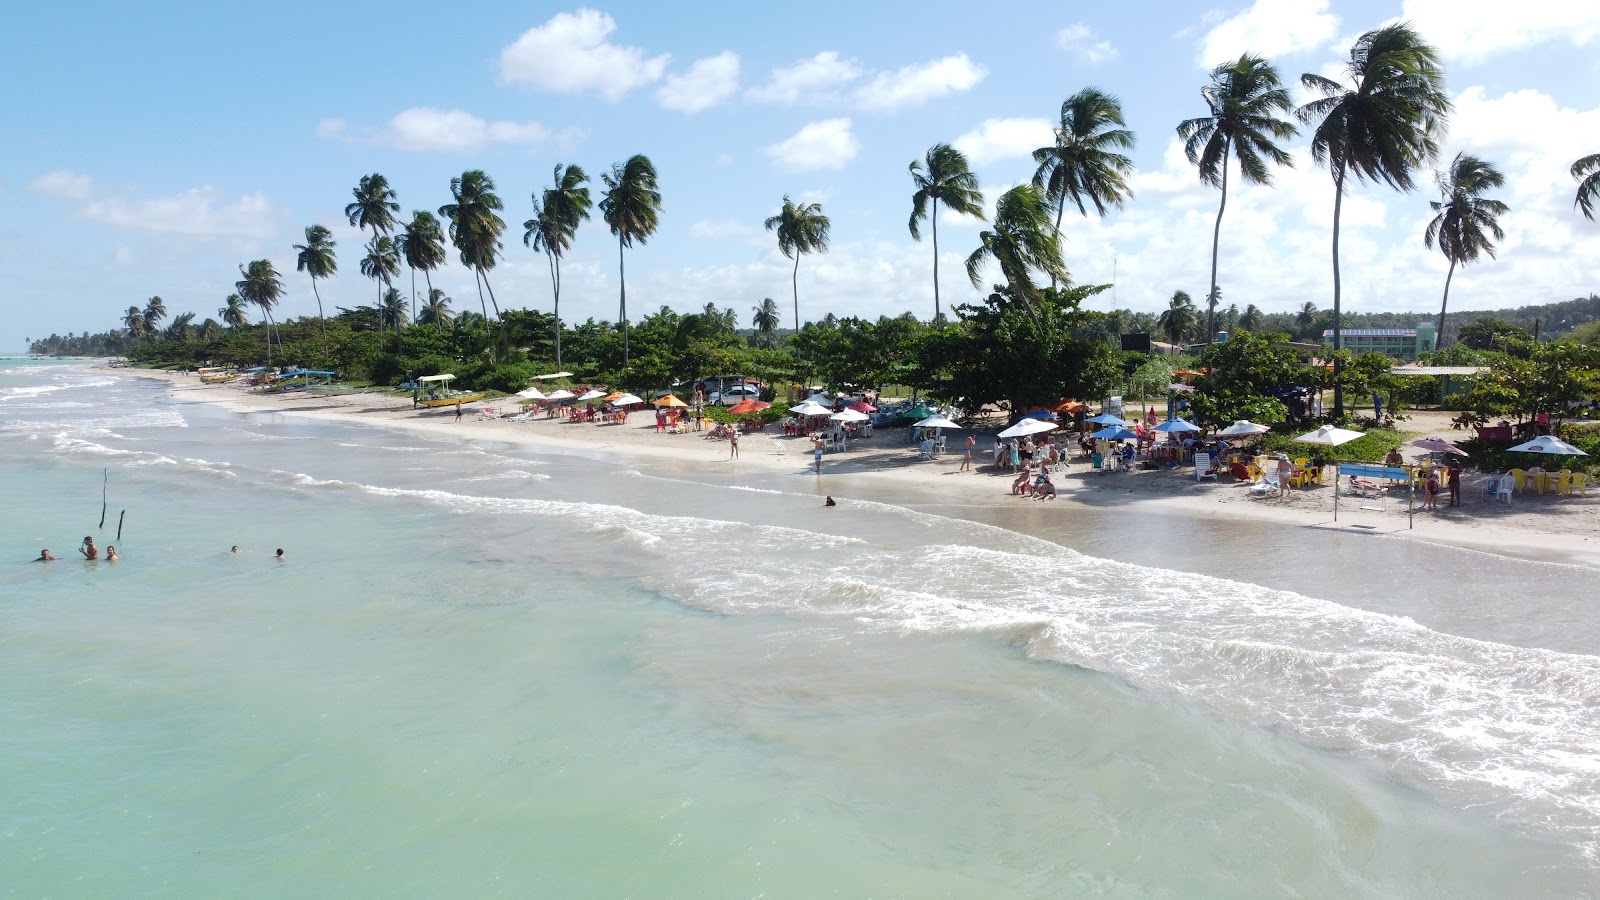 Foto af Praia de Sao Miguel - populært sted blandt afslapningskendere